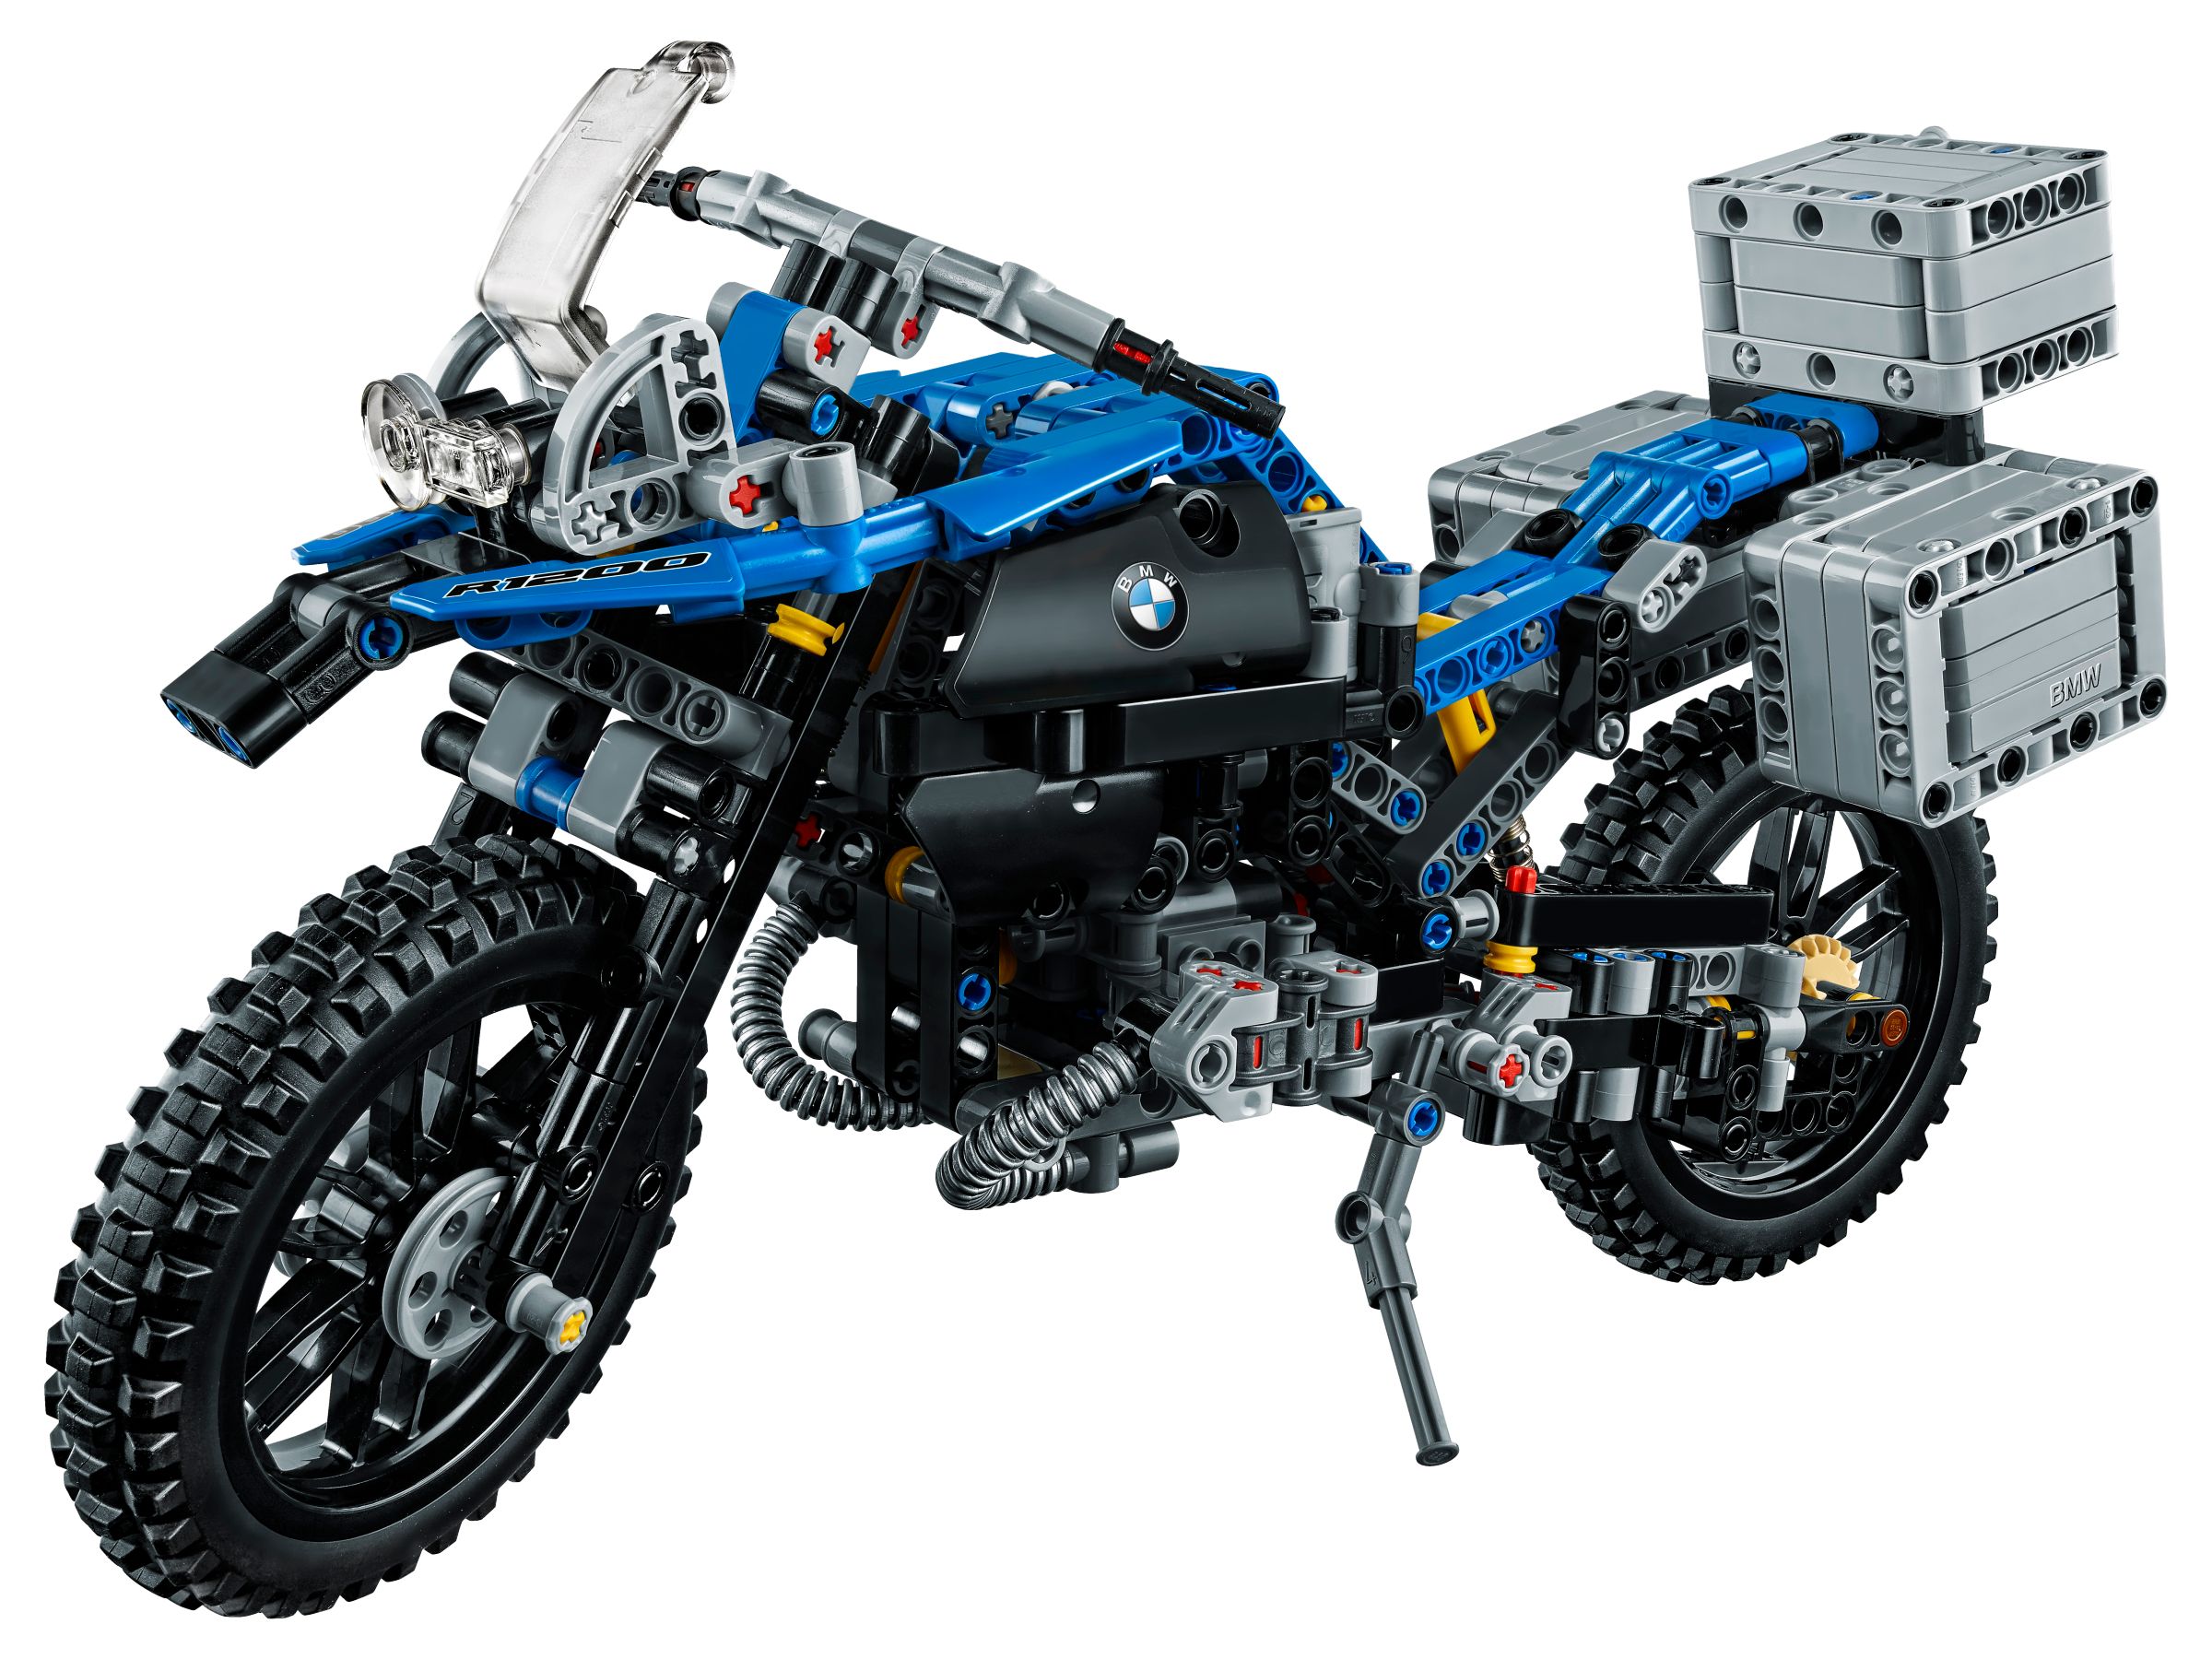 LEGO Technic 42063 BMW R 1200 GS Adventure LEGO_42063_alt2.jpg